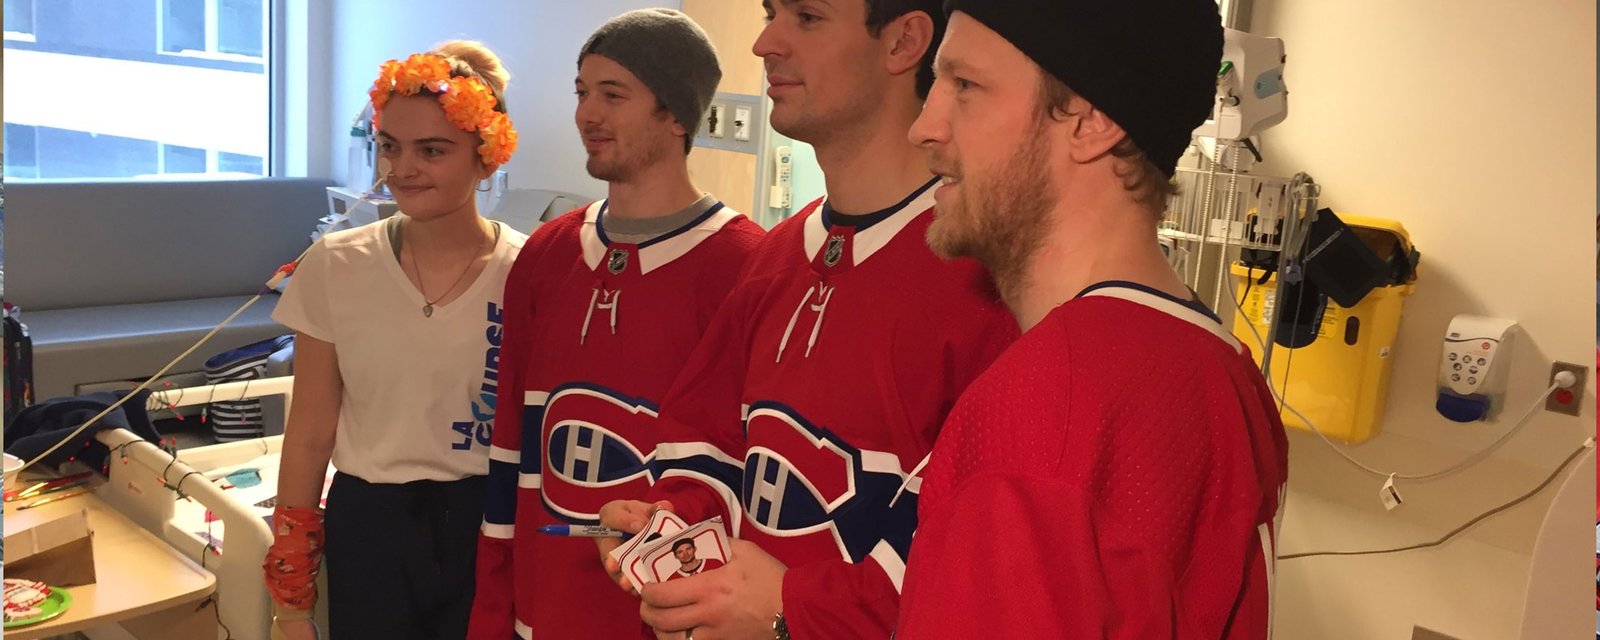 Les joueurs des Canadiens ont rencontré des enfants malades aujourd'hui